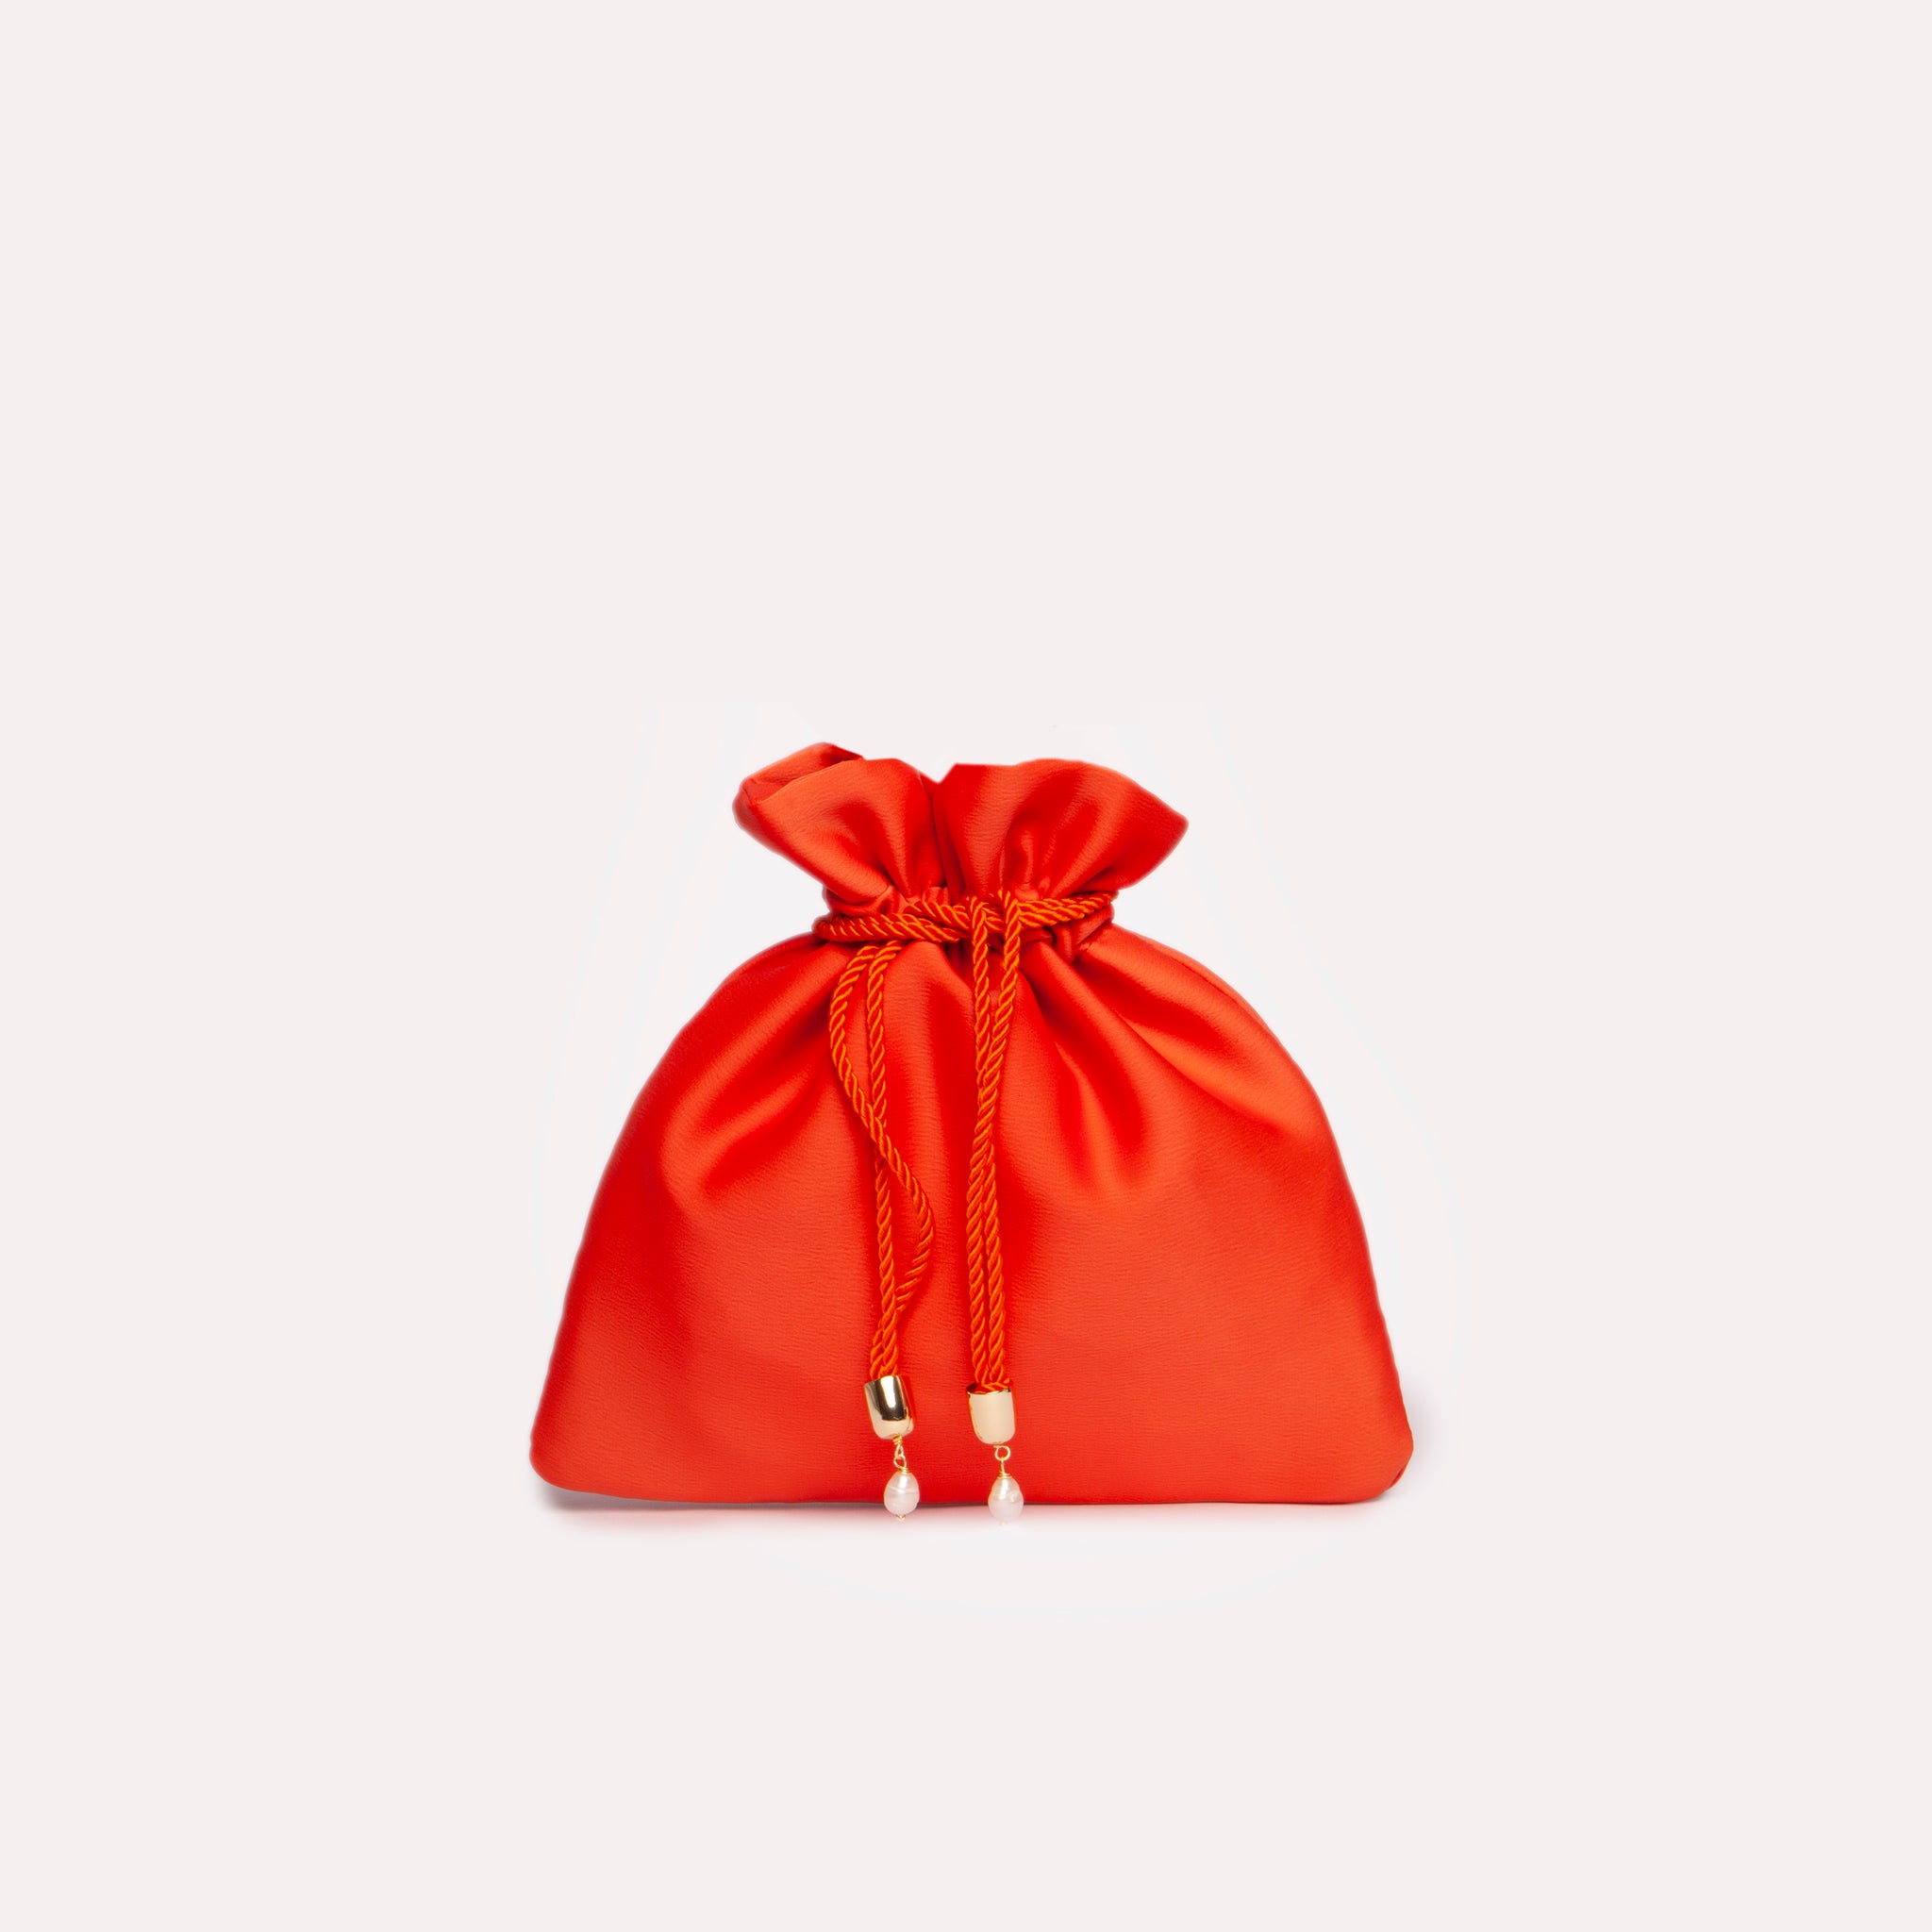 Mini Bag in colorazione arancione